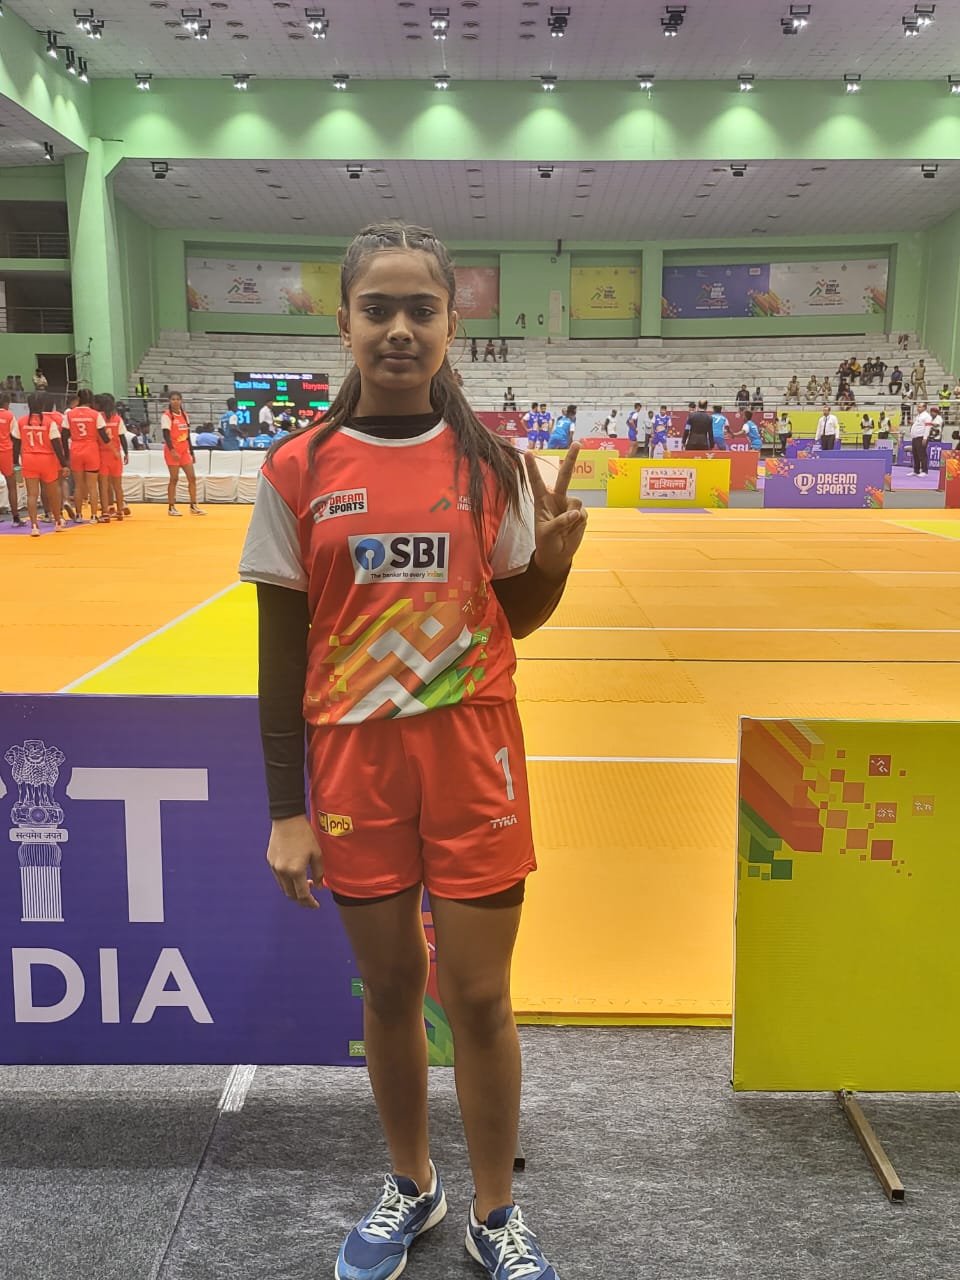 एक ट्रैक्टर चालक की बेटी, झारखंड की ईतु मंडल ने खेलो इंडिया यूथ गेम्स में सबसे छोटी उम्र की कबड्डी खेलों की बनी प्रतिभागी 